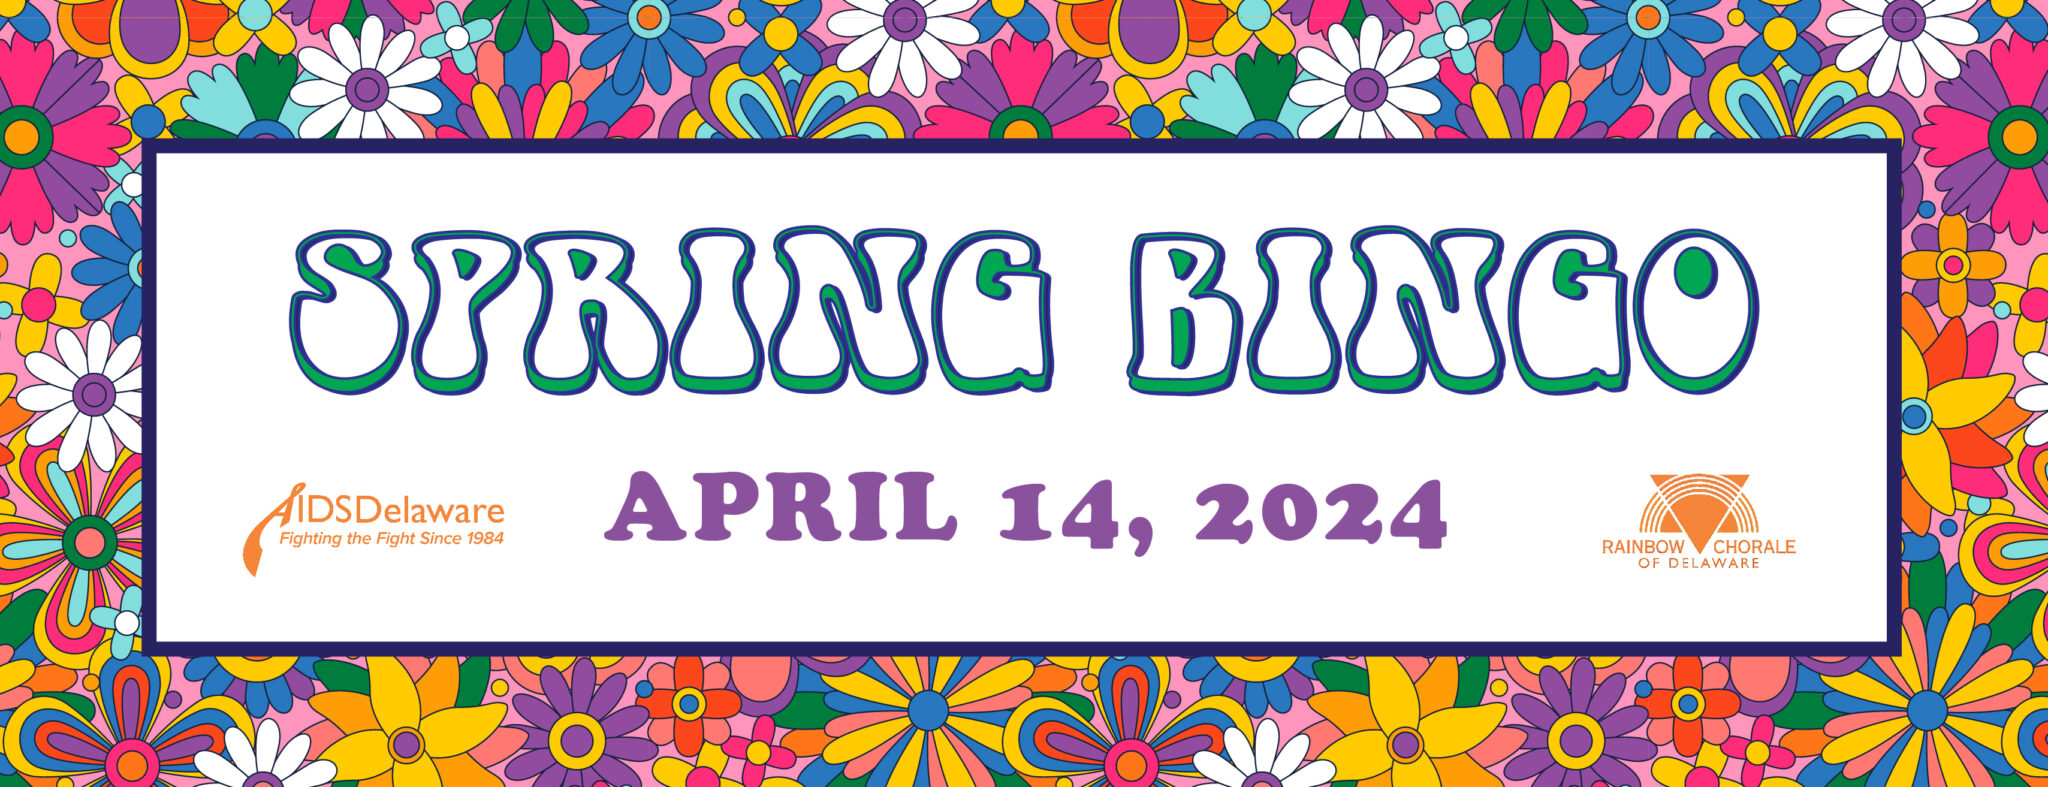 Spring Bingo April 24 2024